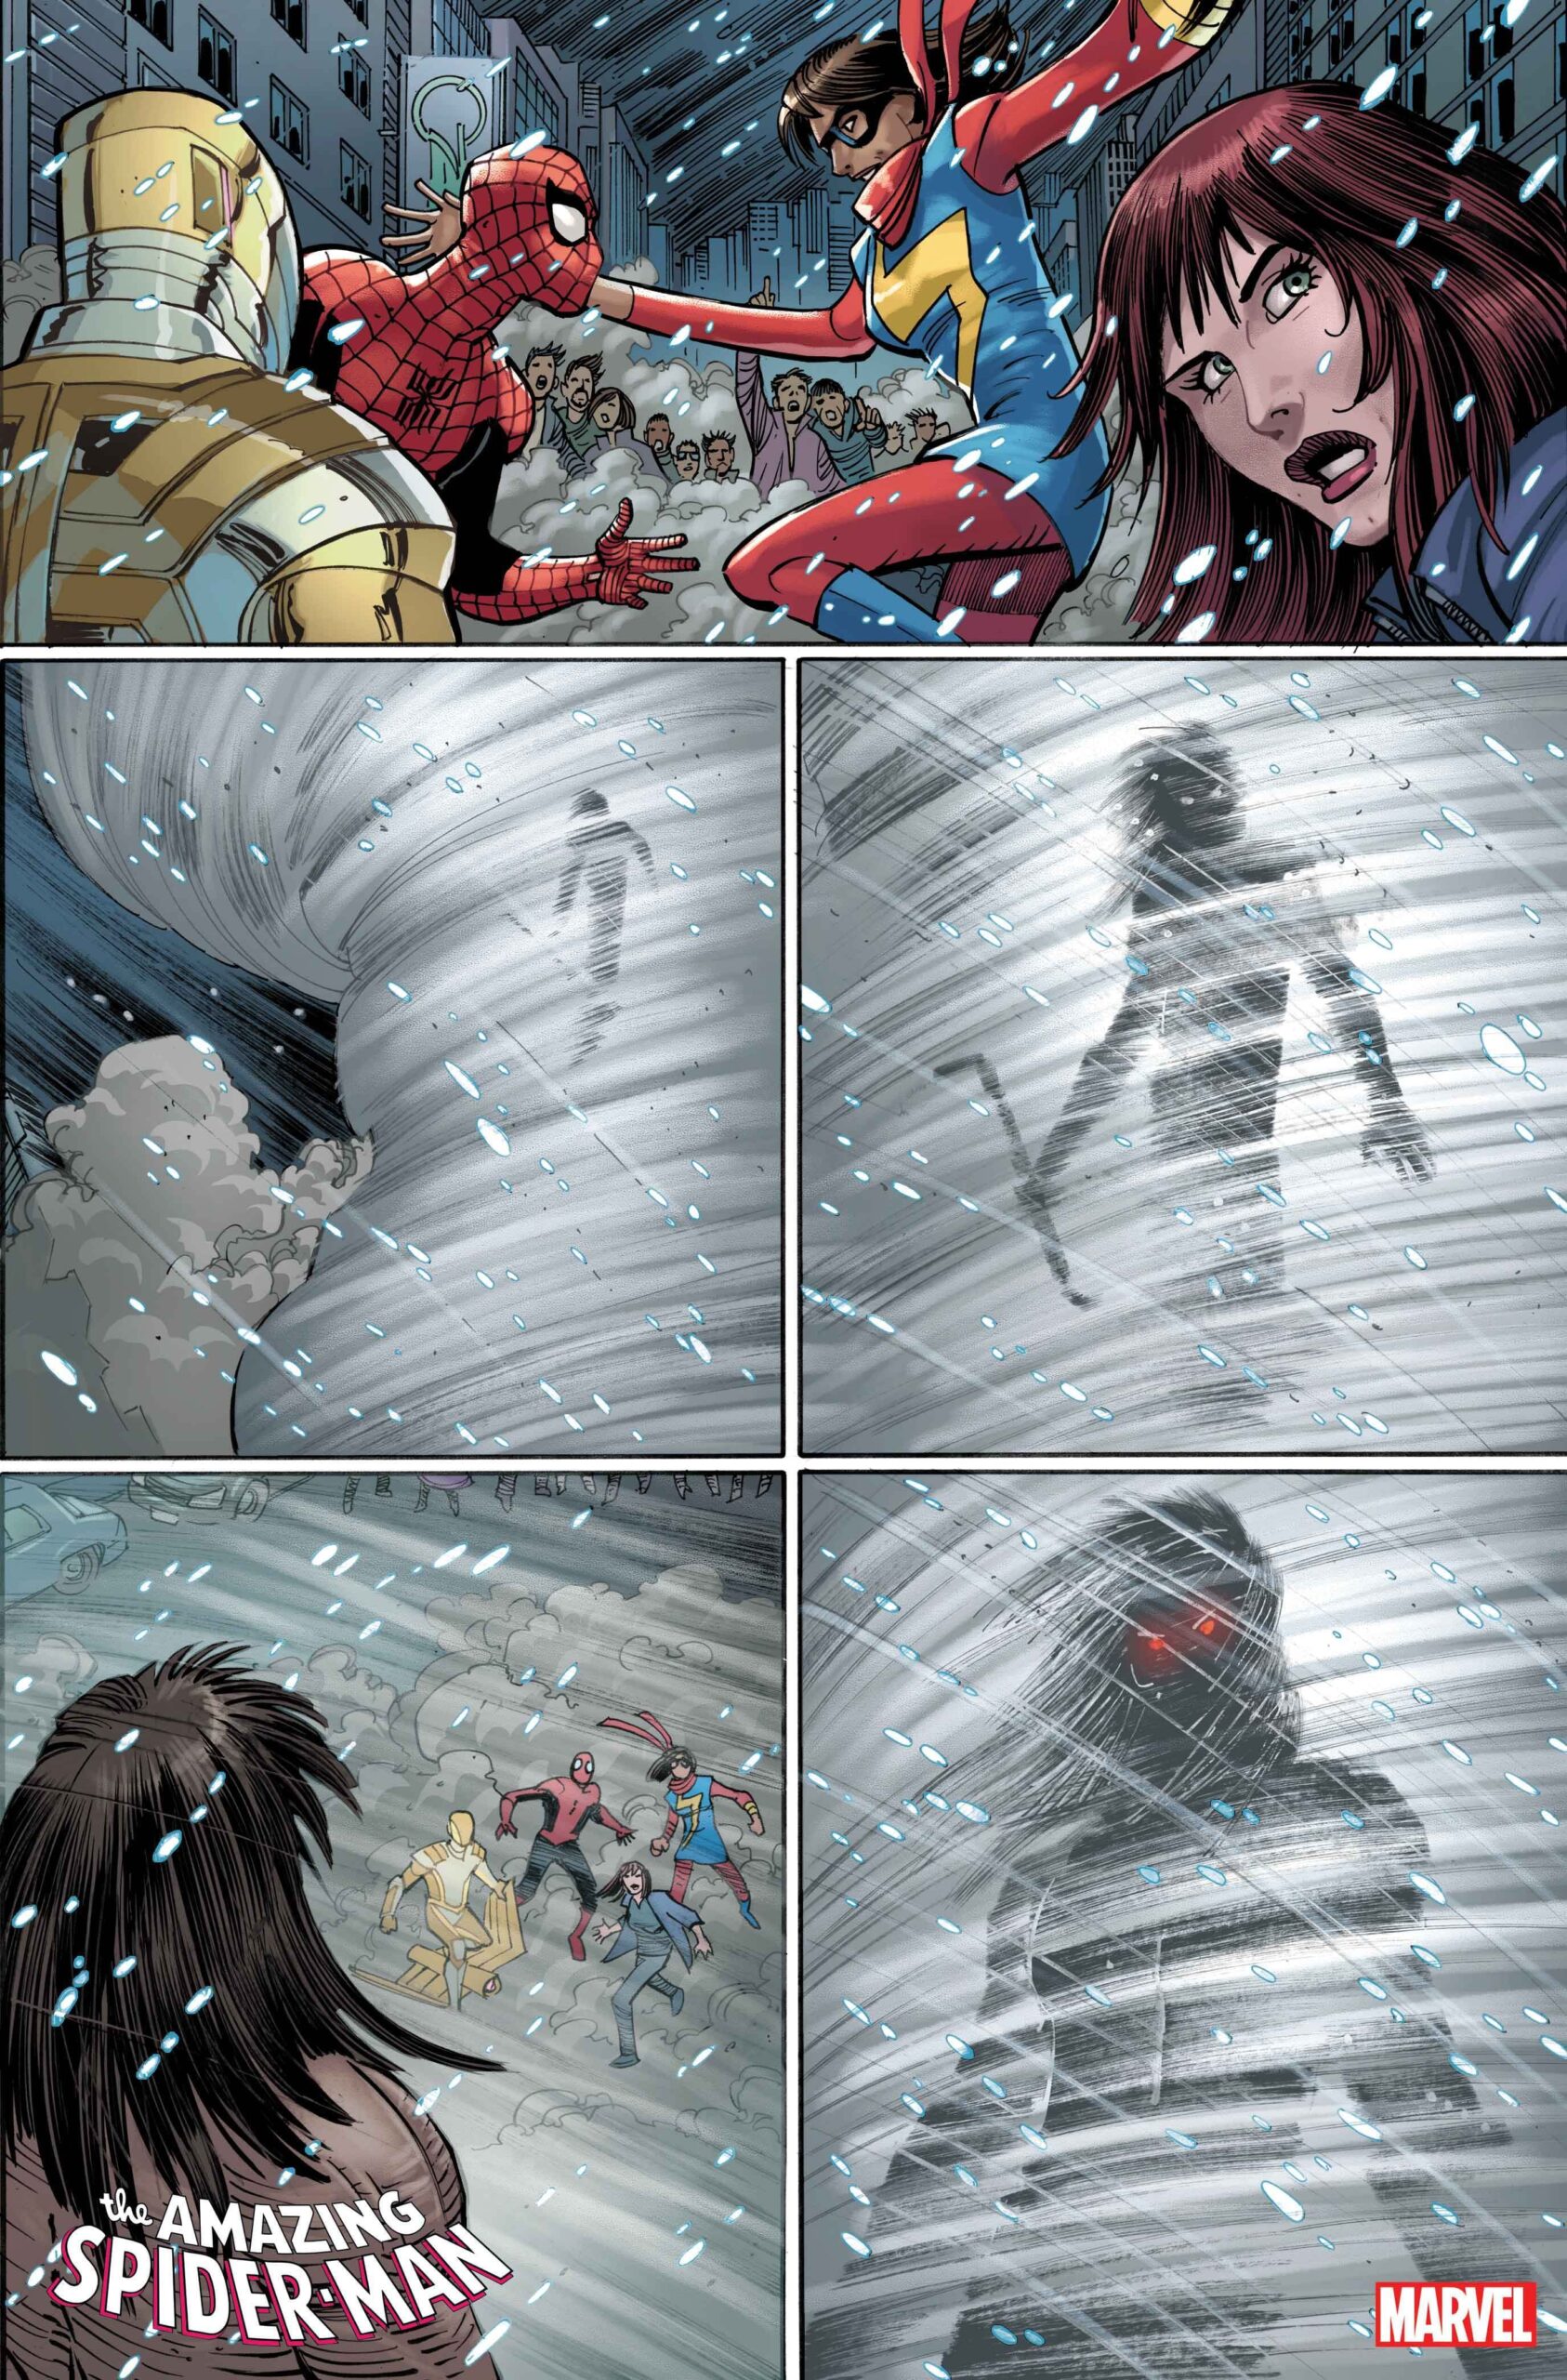 A Morte de Ms Marvel - Amazing Spider-Man #26 - Marvel Comics - Preview 3 - Blog Farofeiros